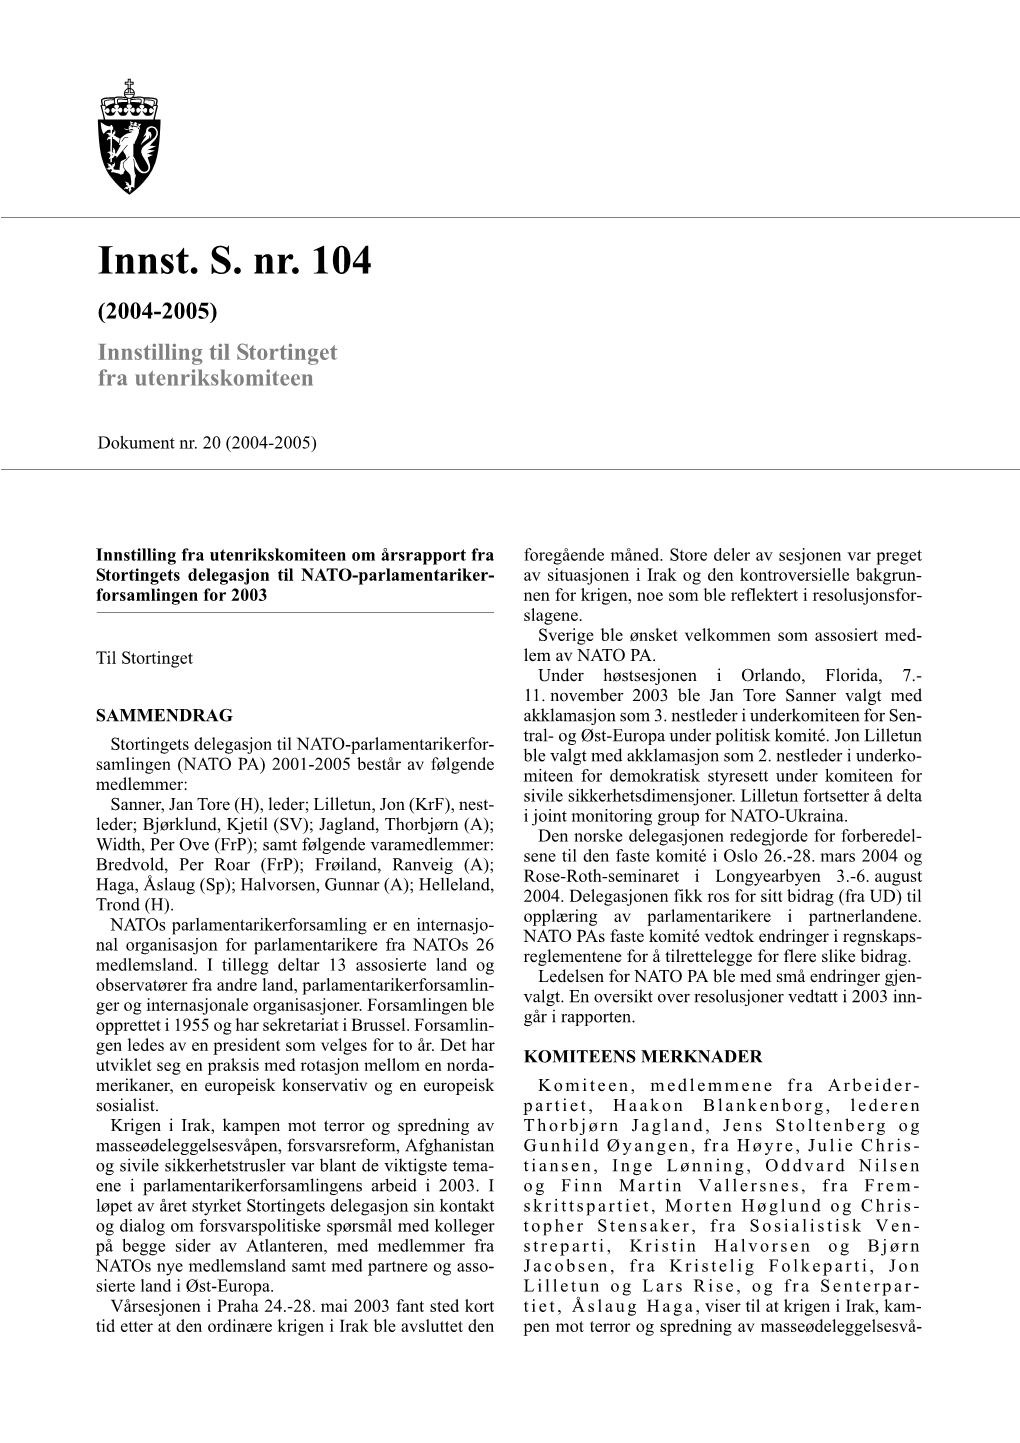 Innst. S. Nr. 104 (2004-2005) Innstilling Til Stortinget Fra Utenrikskomiteen